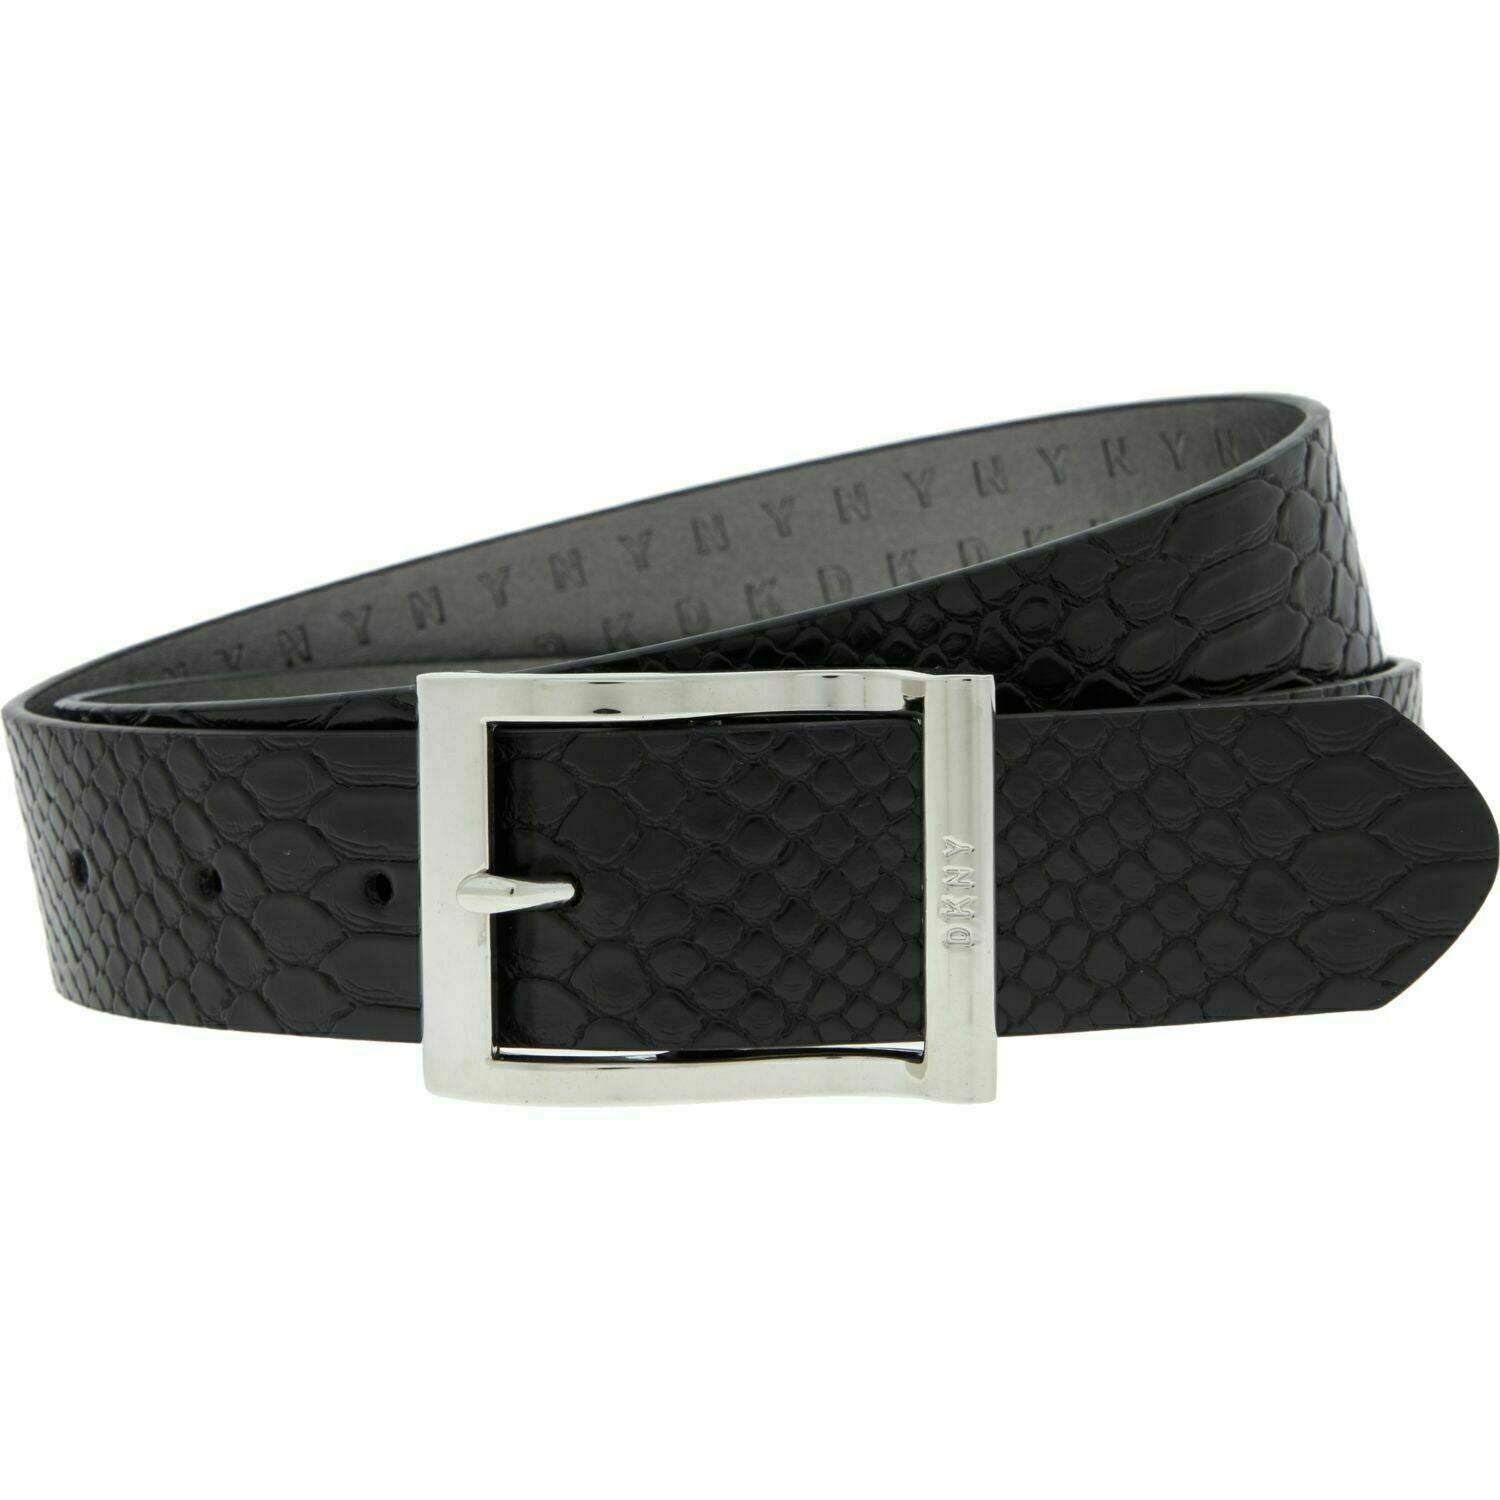 DKNY Women's Faux Leather Reptile Effect Belt, Black, 1.25" wide, size L